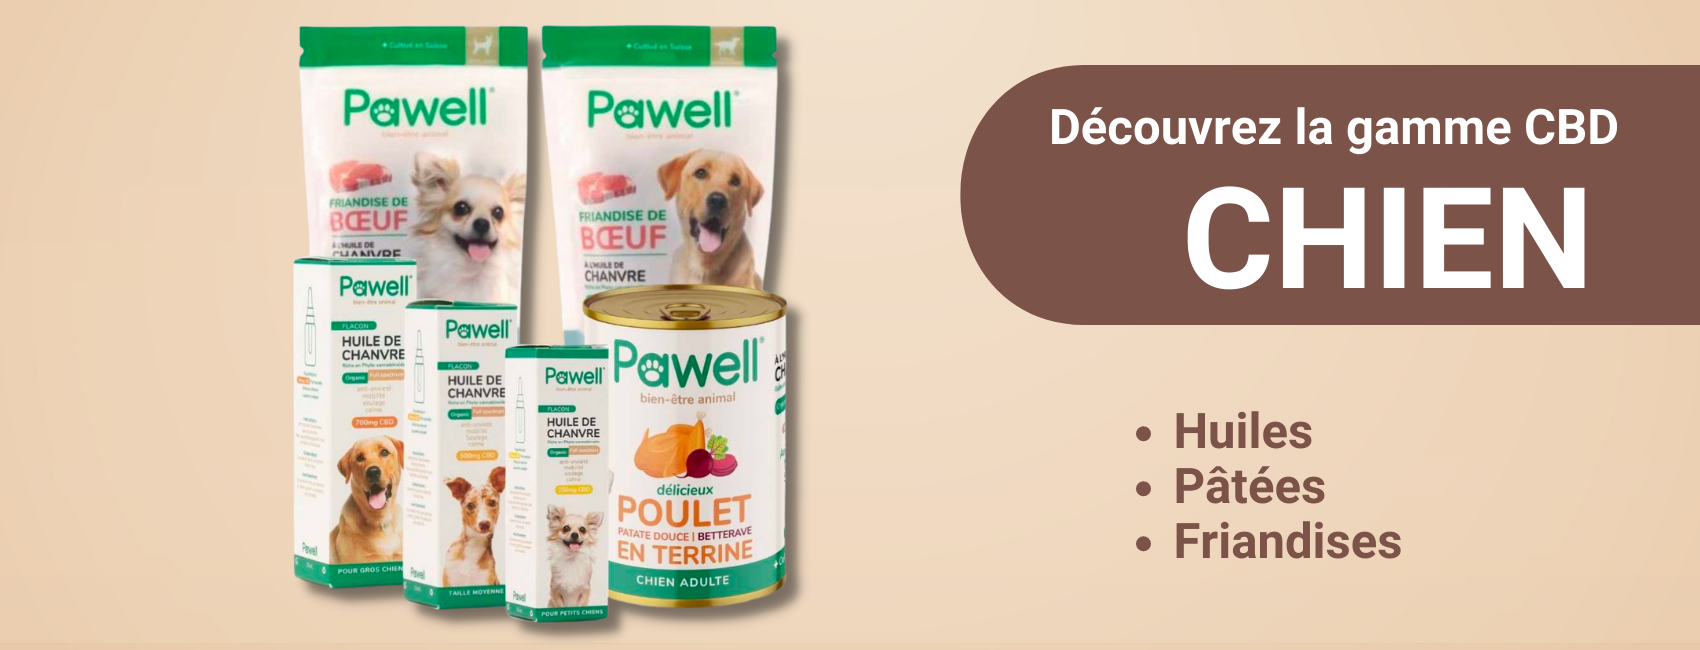 Produits Pawell à base de CBD pour le chien